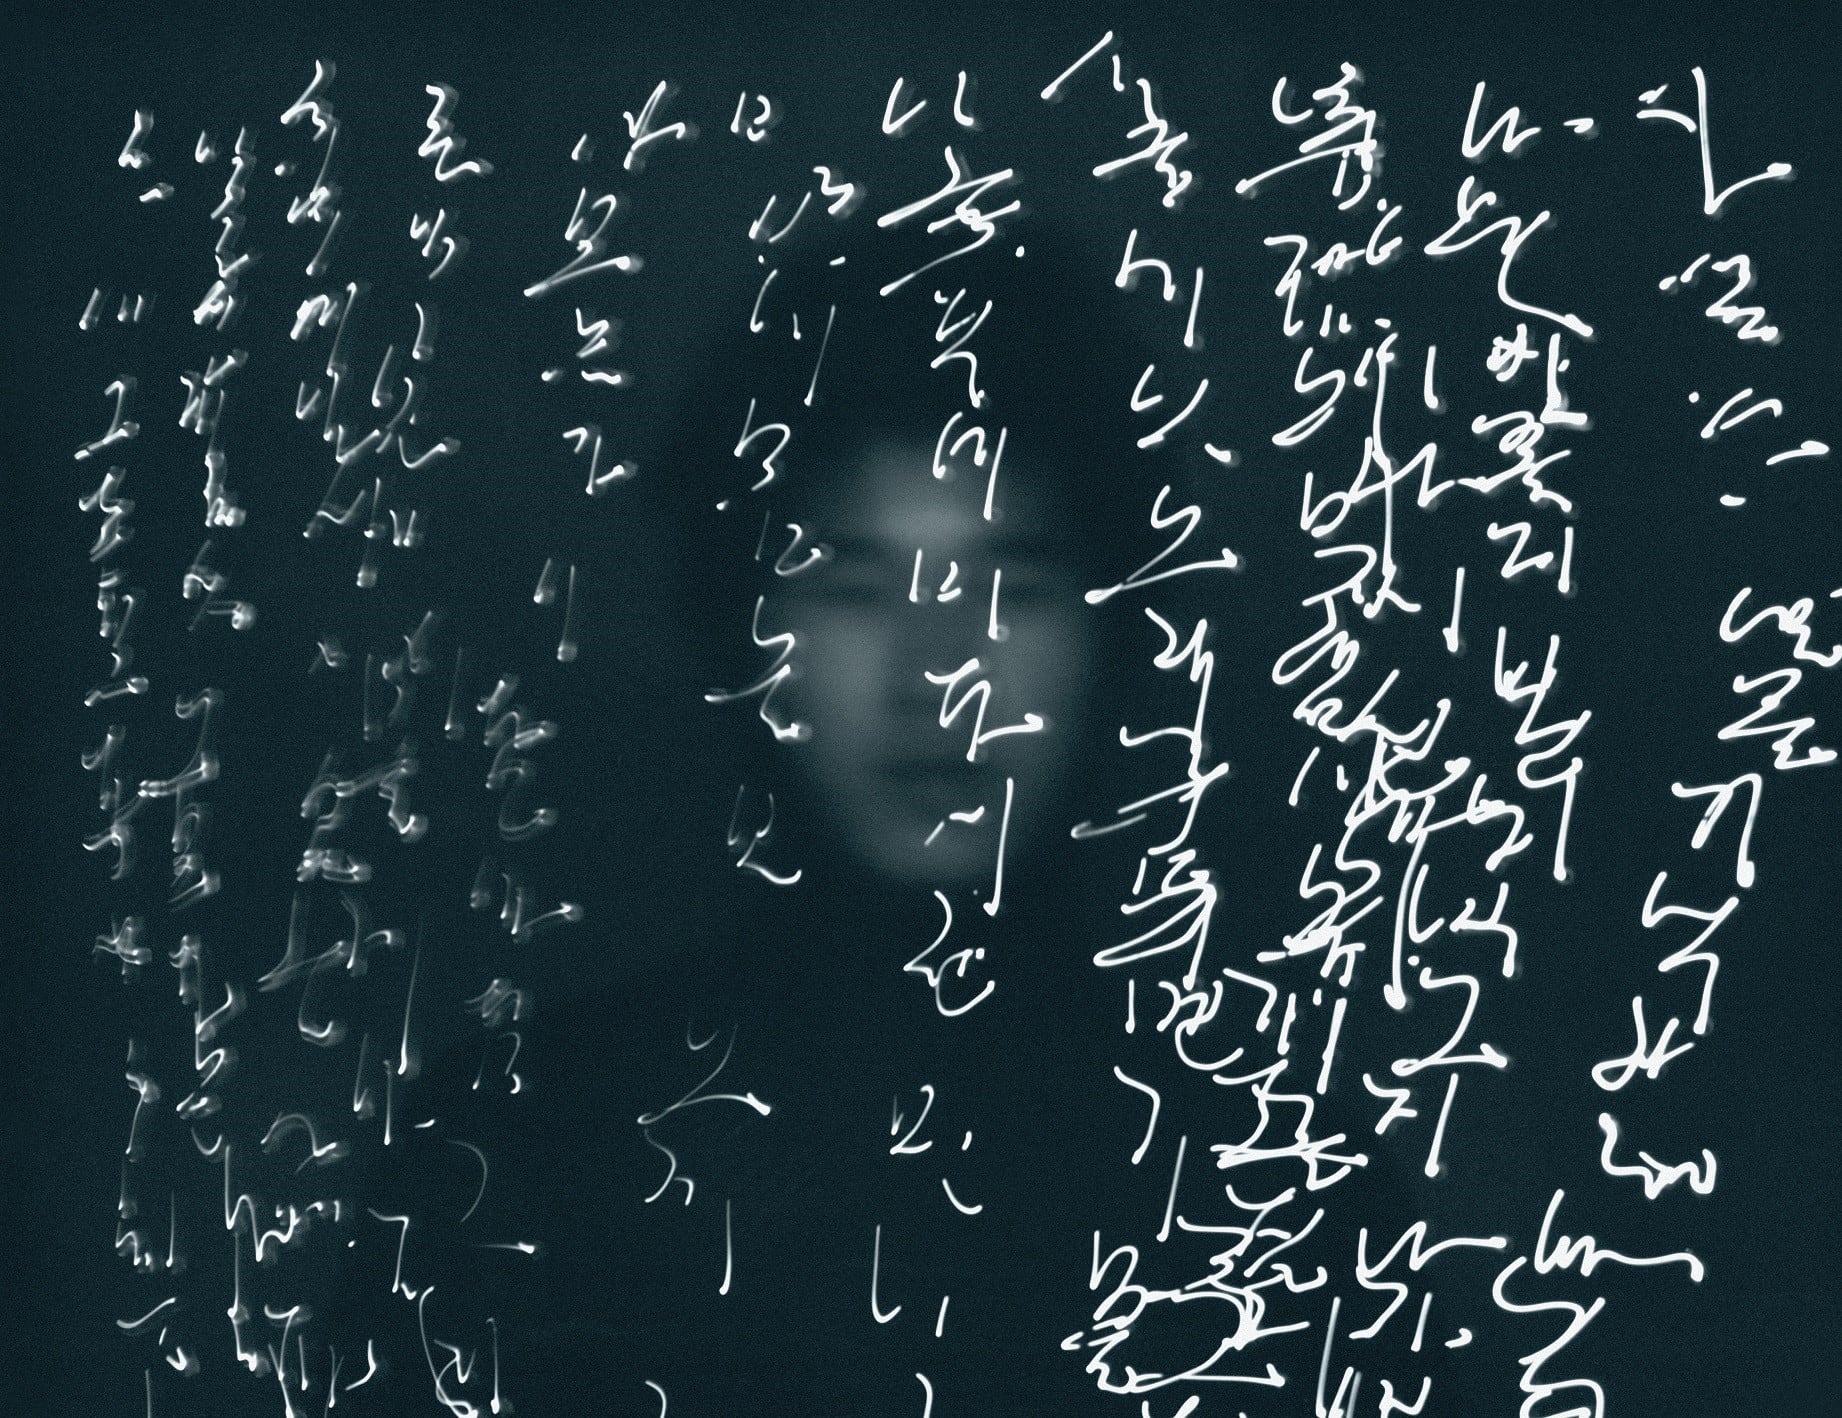 Выставка корейской каллиграфии пройдет при поддержке Hyundai Motor в Музее искусств округа Лос-Анджелес